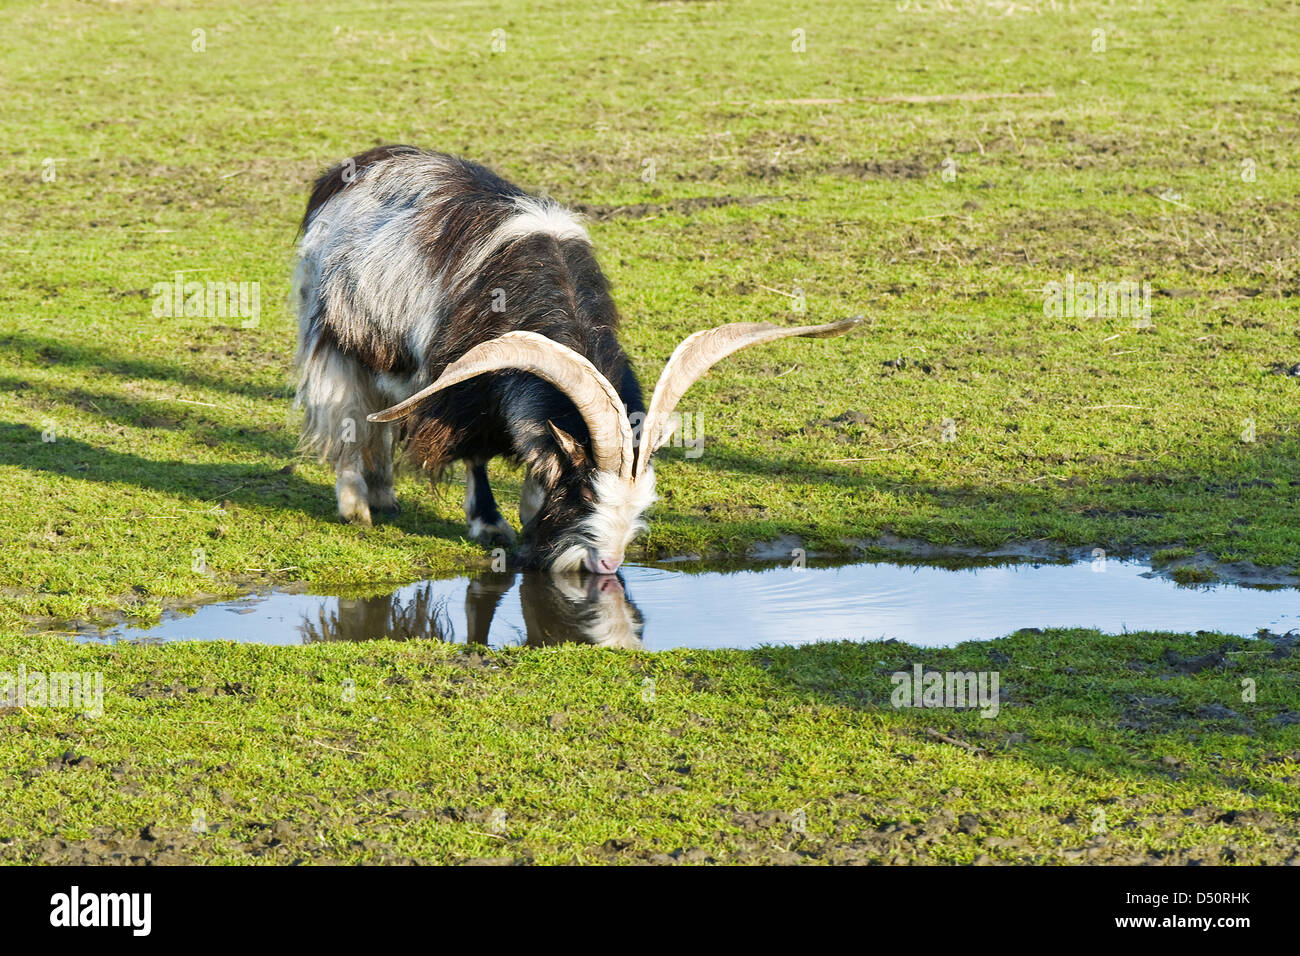 La chèvre de montagne boire de l'eau à partir de la flaque Banque D'Images